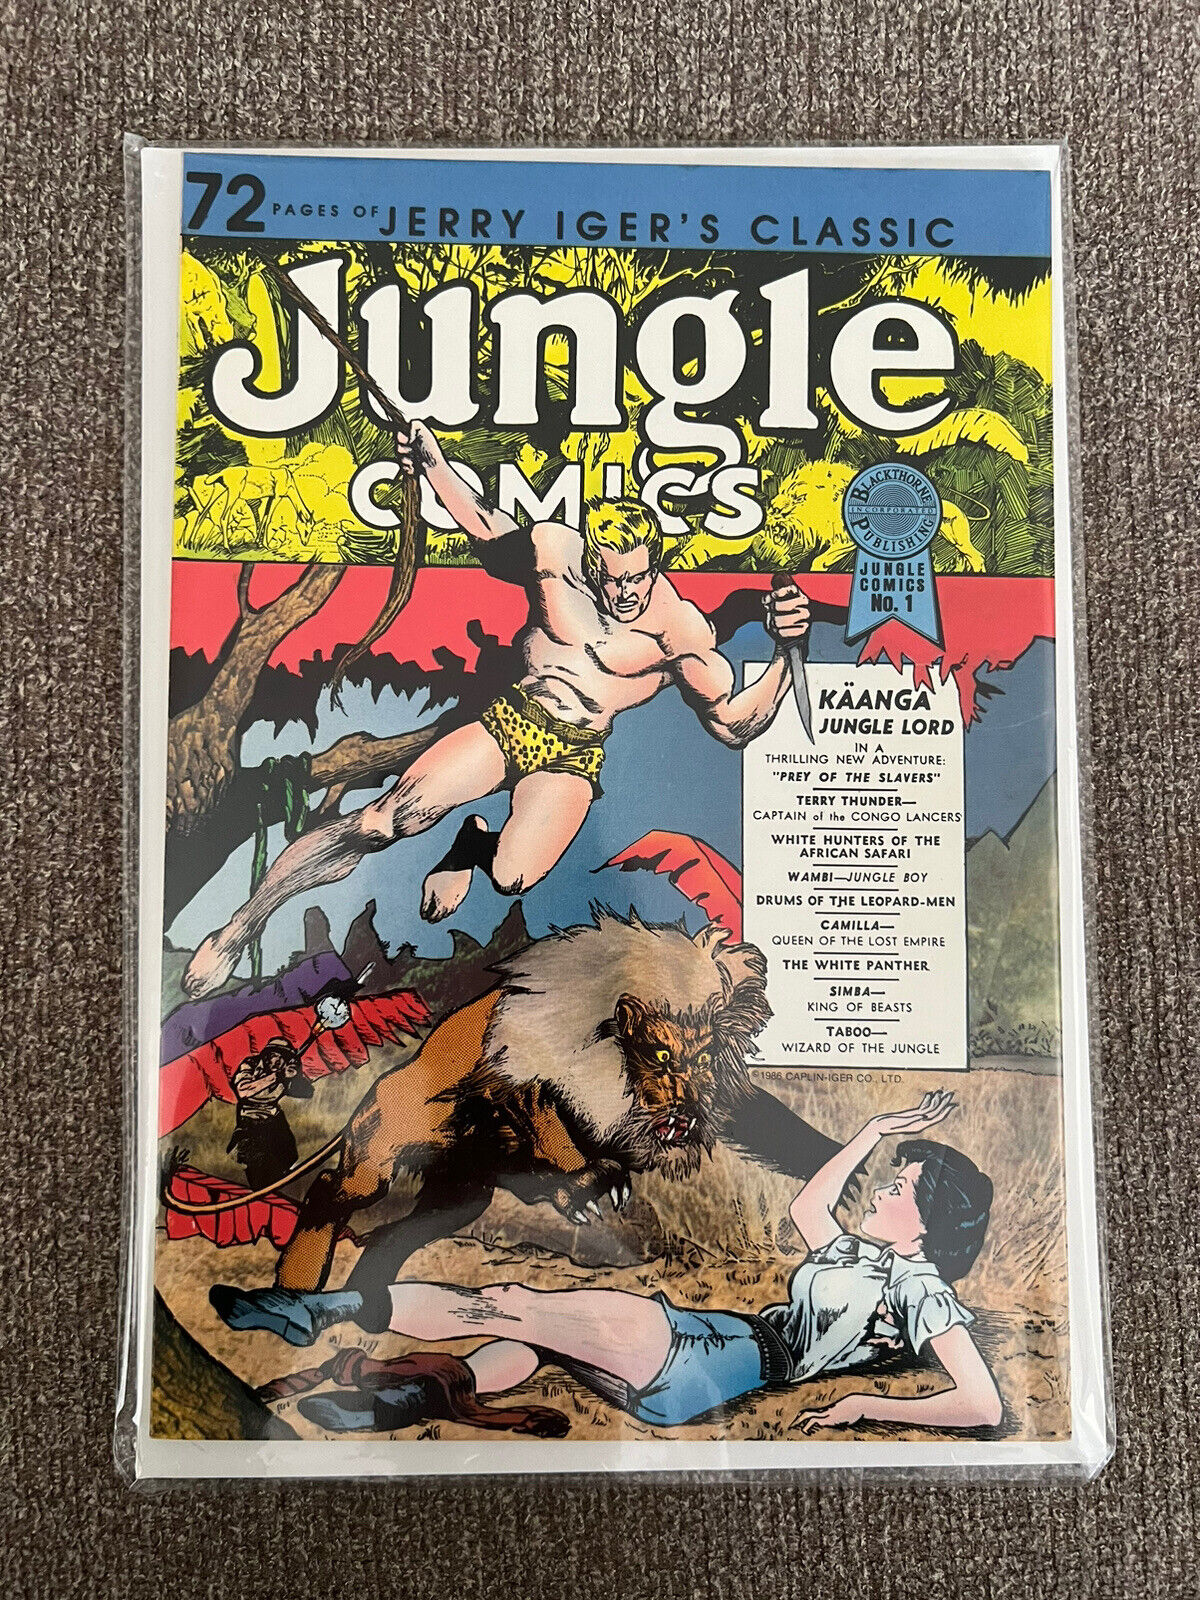 Jerry Iger’s Classic - Jungle Comics #1 VG JP